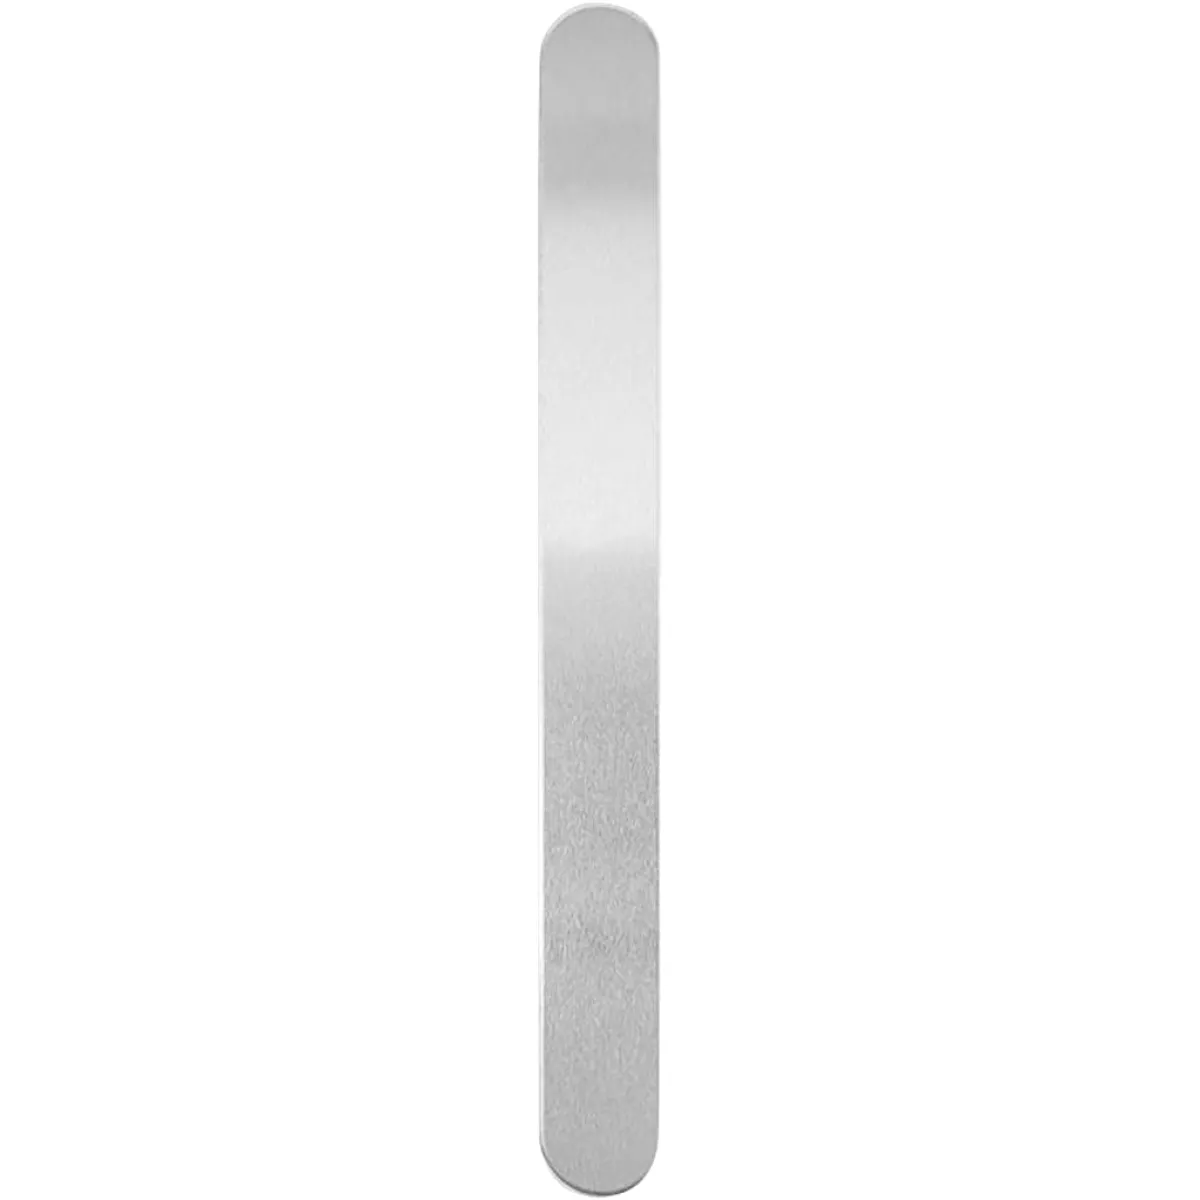 #3 - Metalbånd, L: 15,2 cm, B: 16 mm, tykkelse 1,6 mm, aluminium, 7 stk./ 1 pk.